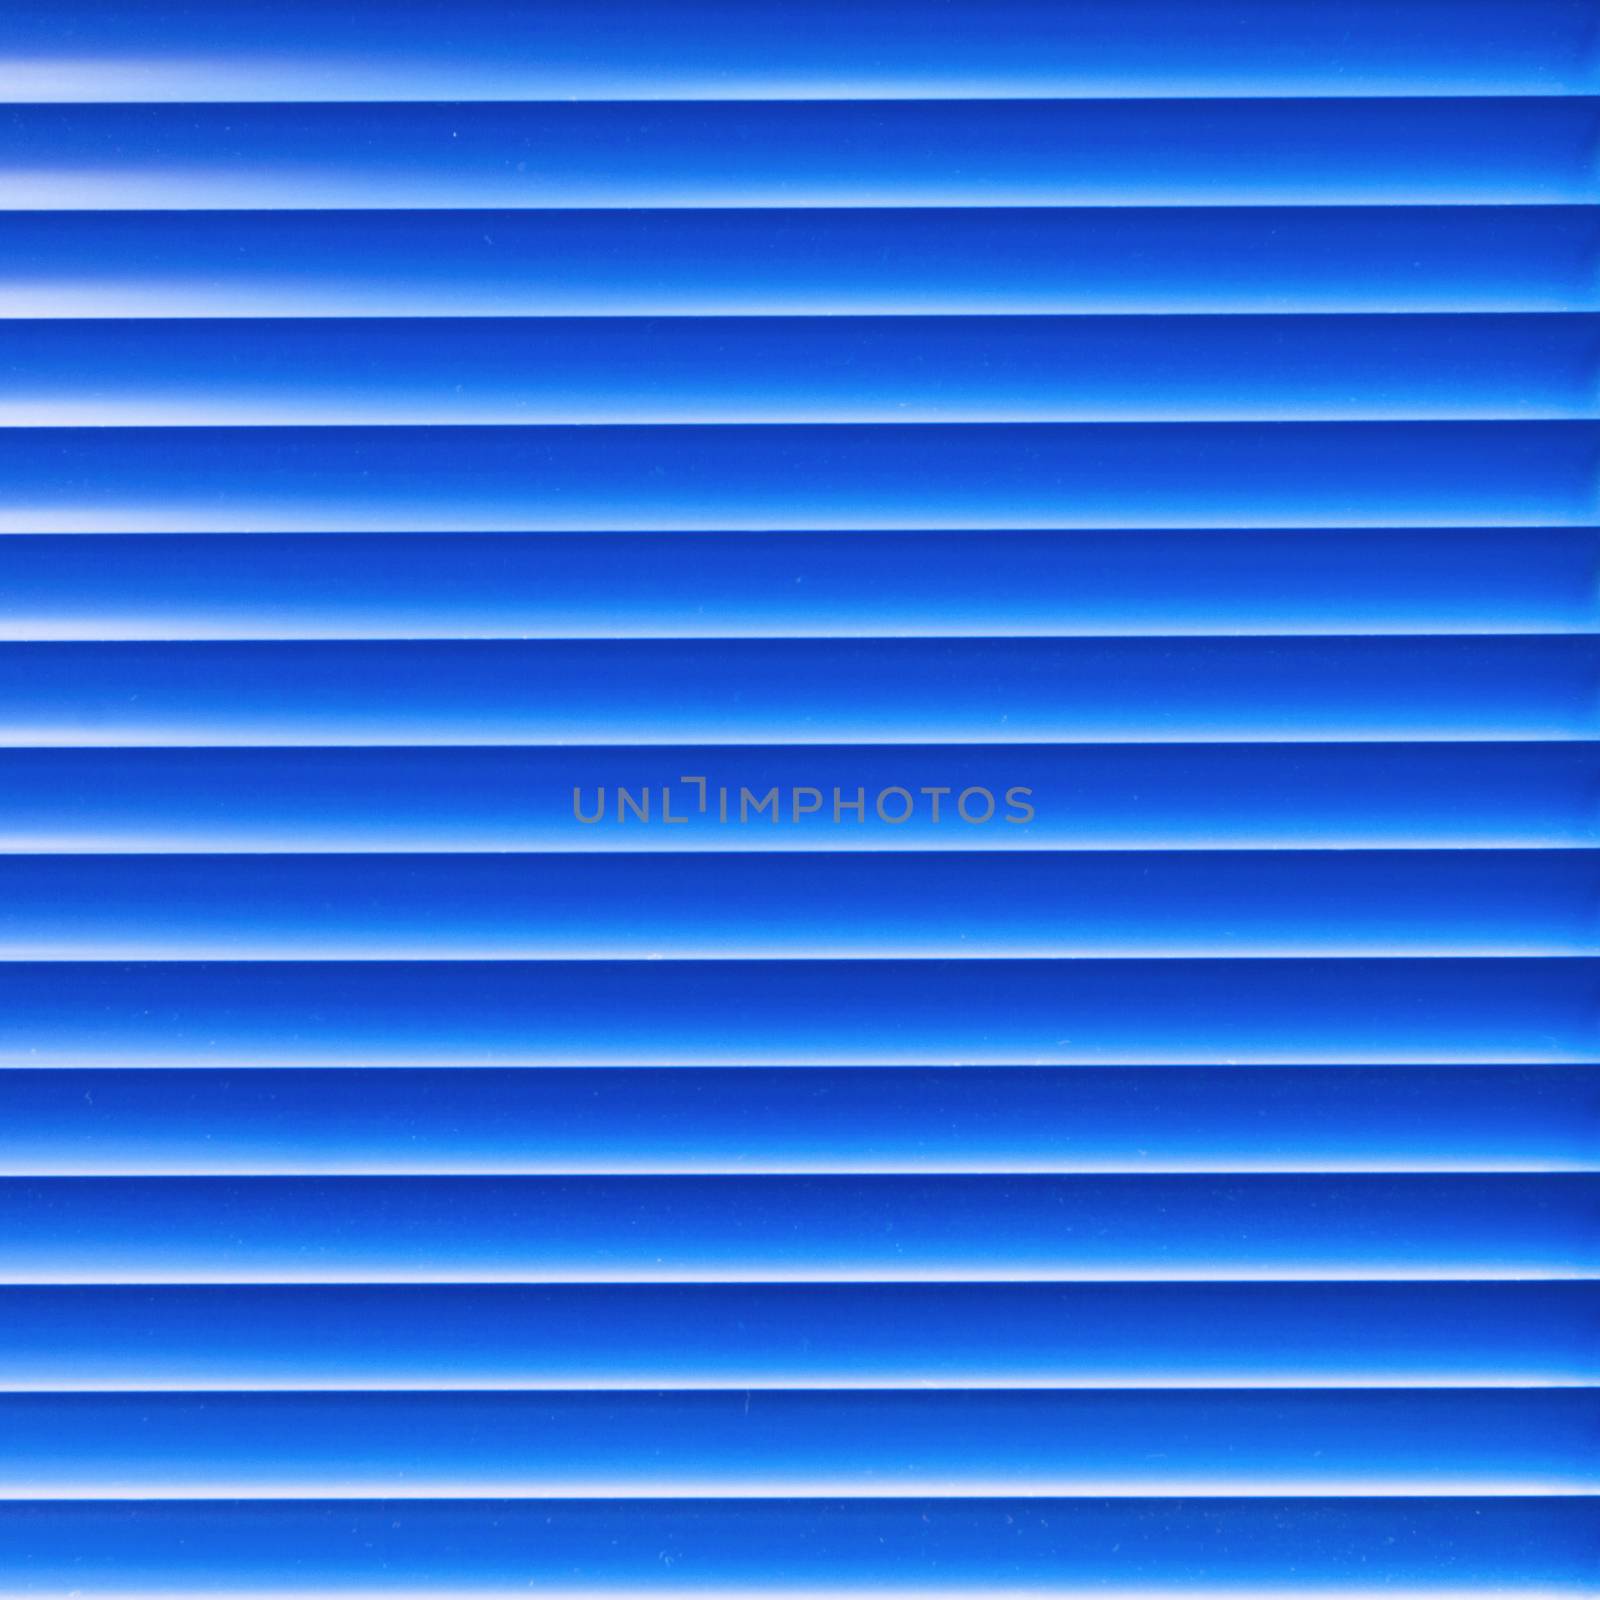 Modern blue light blinder close up background